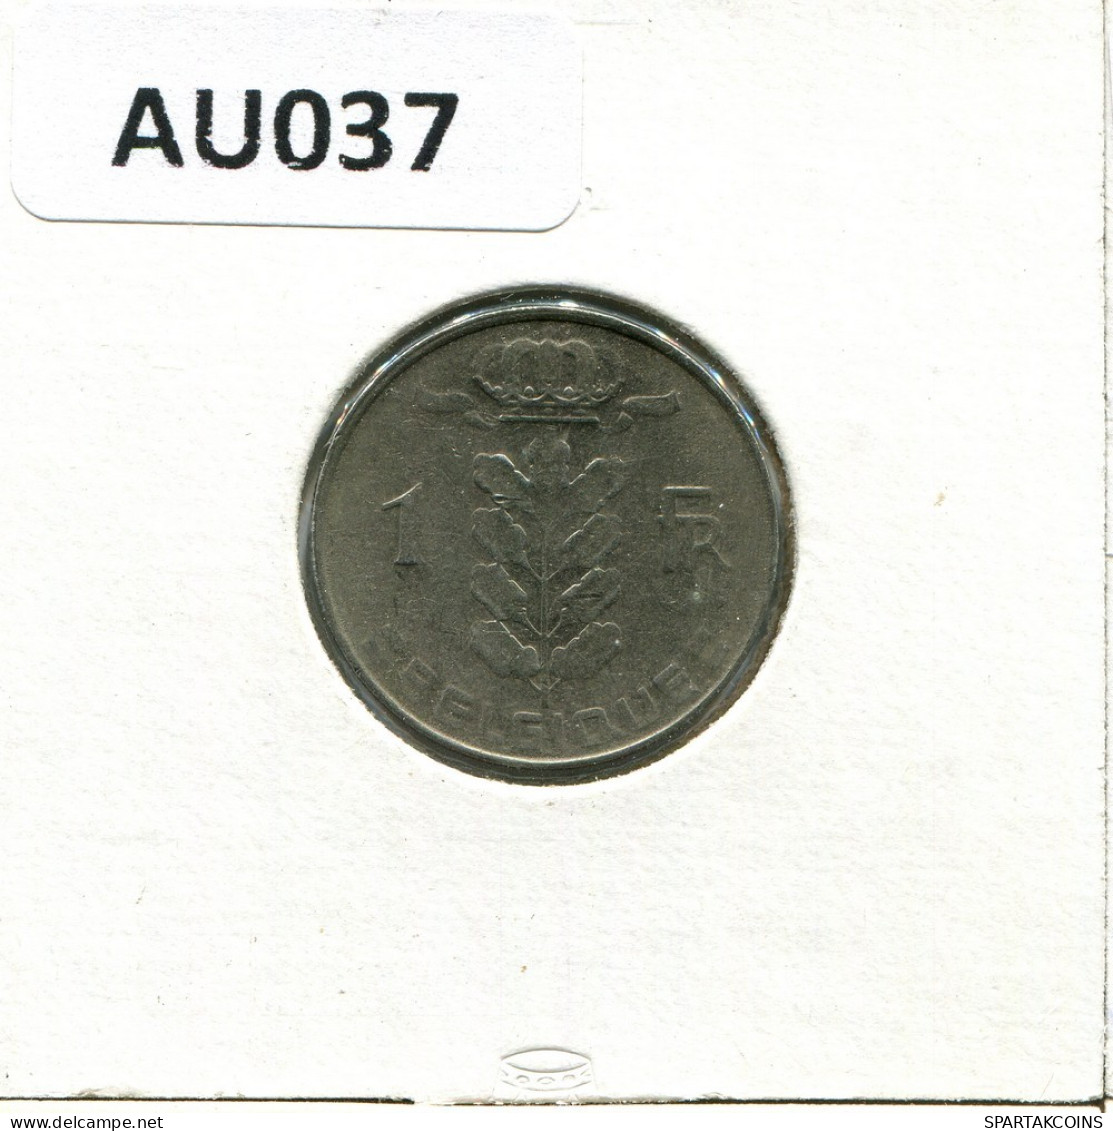 1 FRANC 1977 FRENCH Text BÉLGICA BELGIUM Moneda #AU037.E.A - 1 Franc